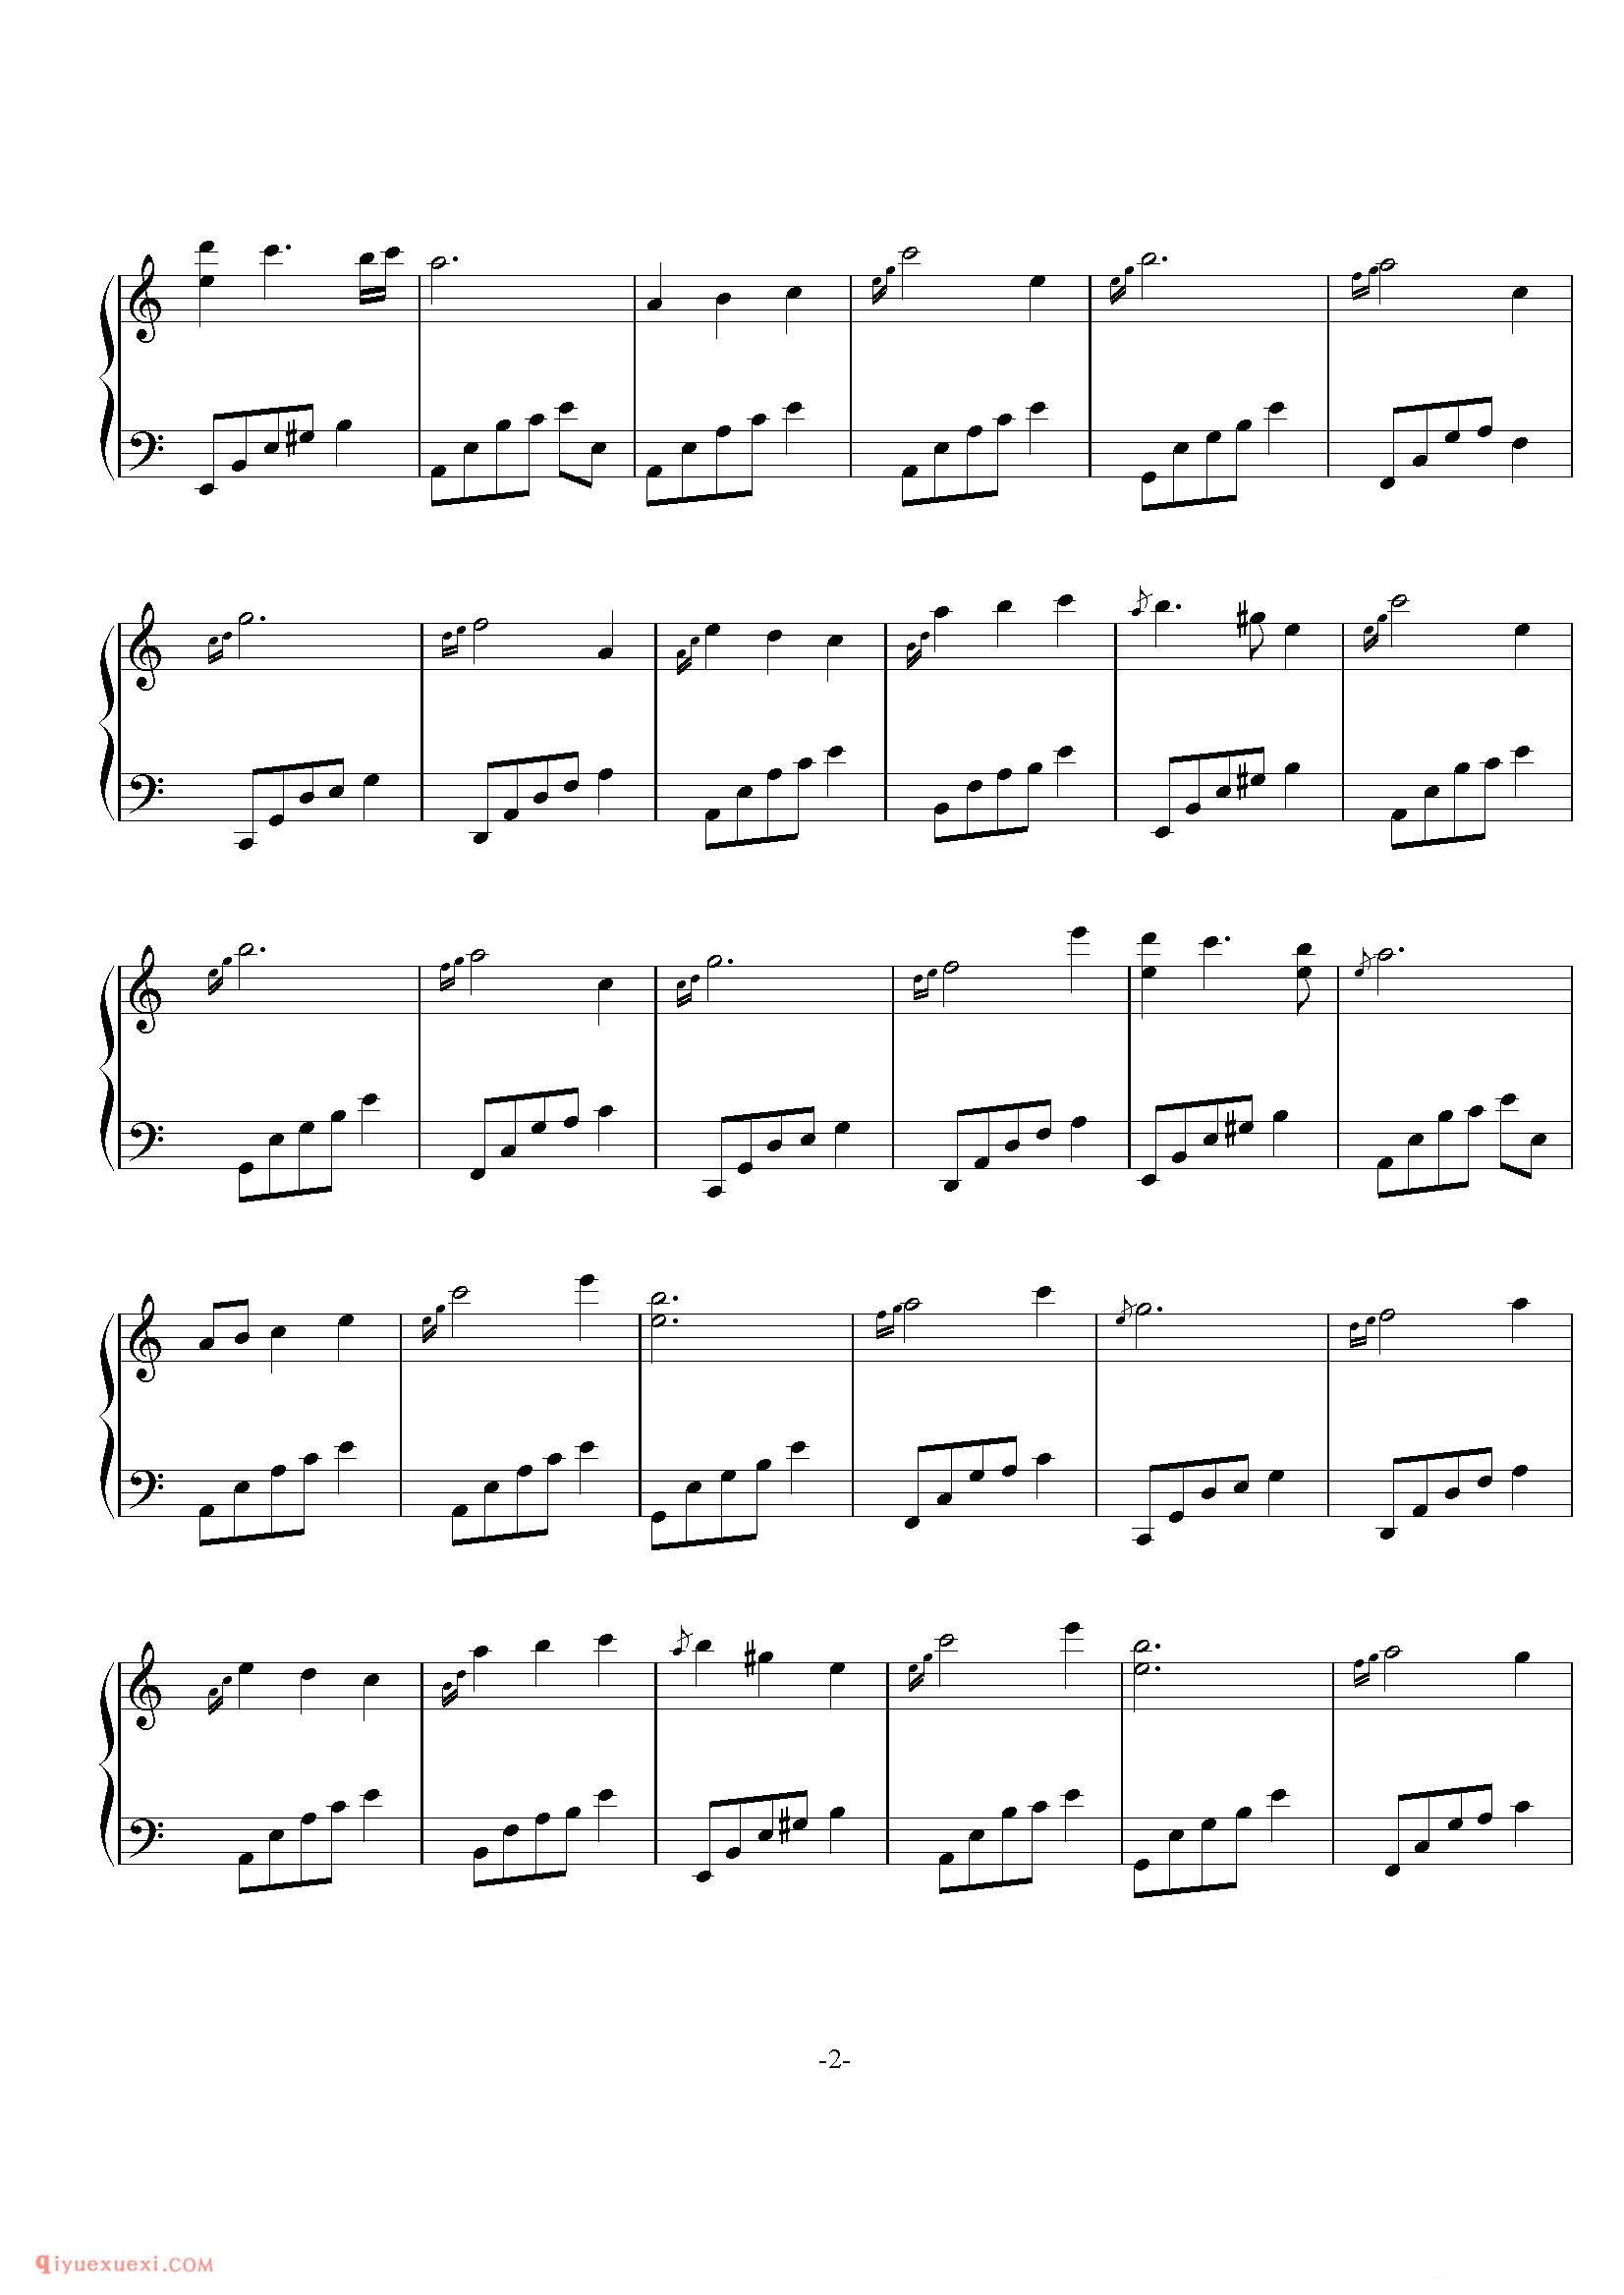 石进《夜的钢琴曲》第20首_石进夜的钢琴曲(20)五线谱